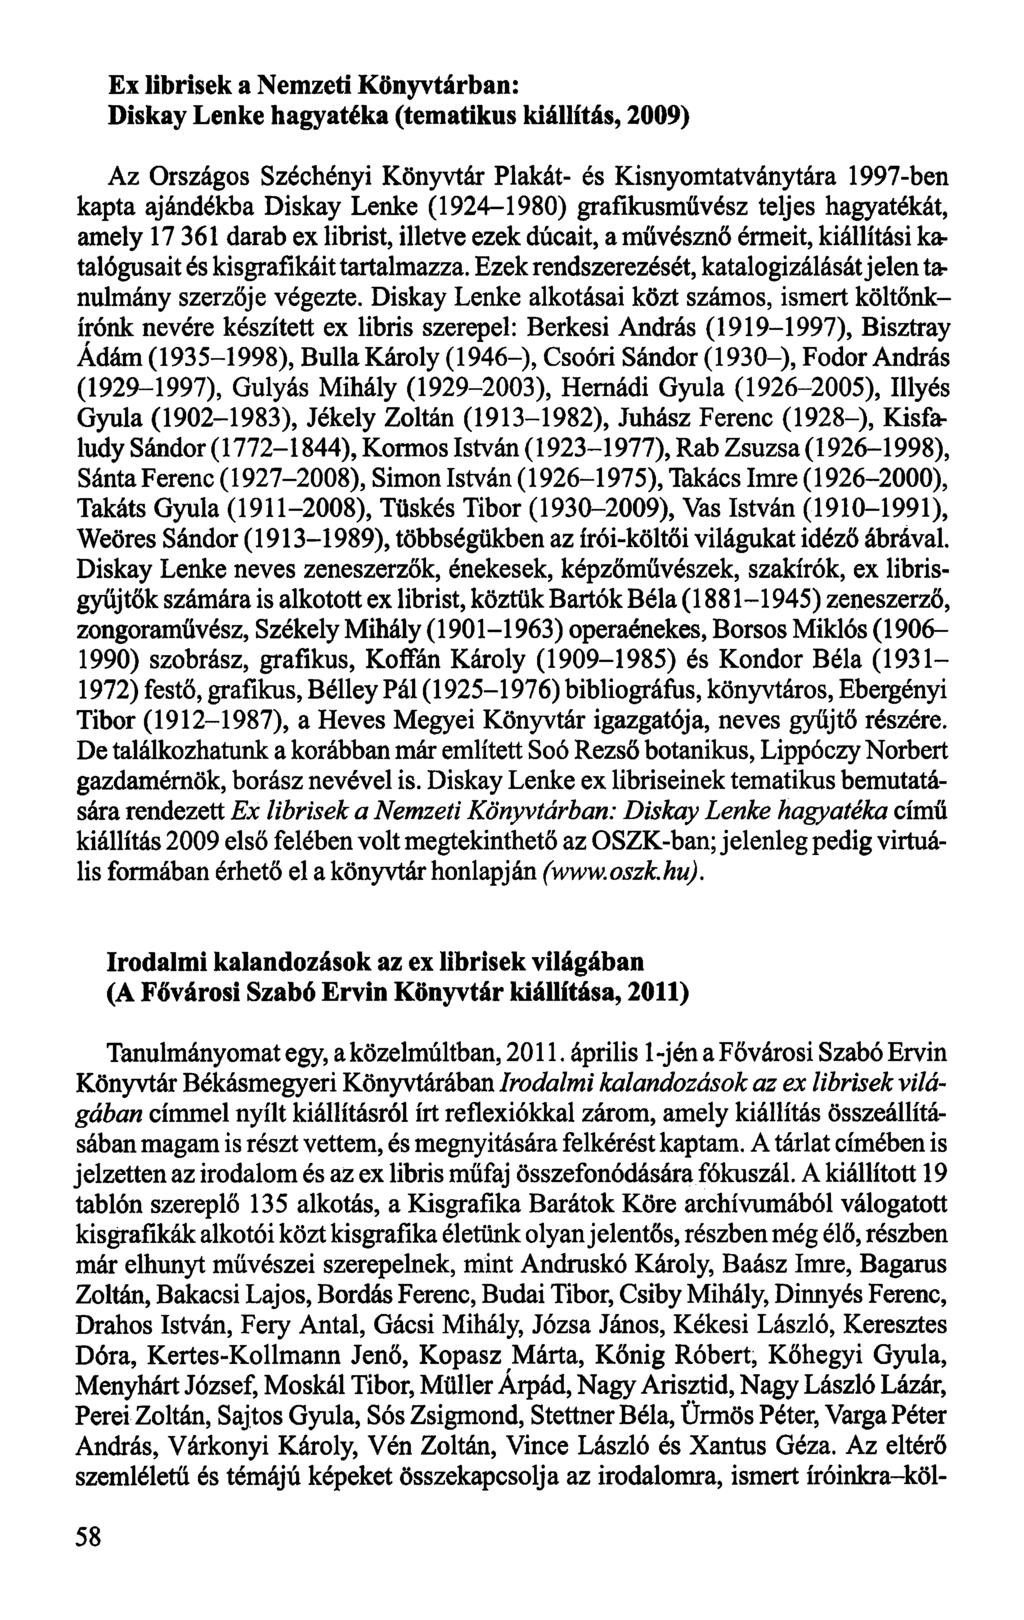 Ex librisek a Nemzeti Könyvtárban: Diskay Lenke hagyatéka (tematikus kiállítás, 2009) Az Országos Széchényi Könyvtár Plakát- és Kisnyomtatványtára 1997-ben kapta ajándékba Diskay Lenke (1924-1980)